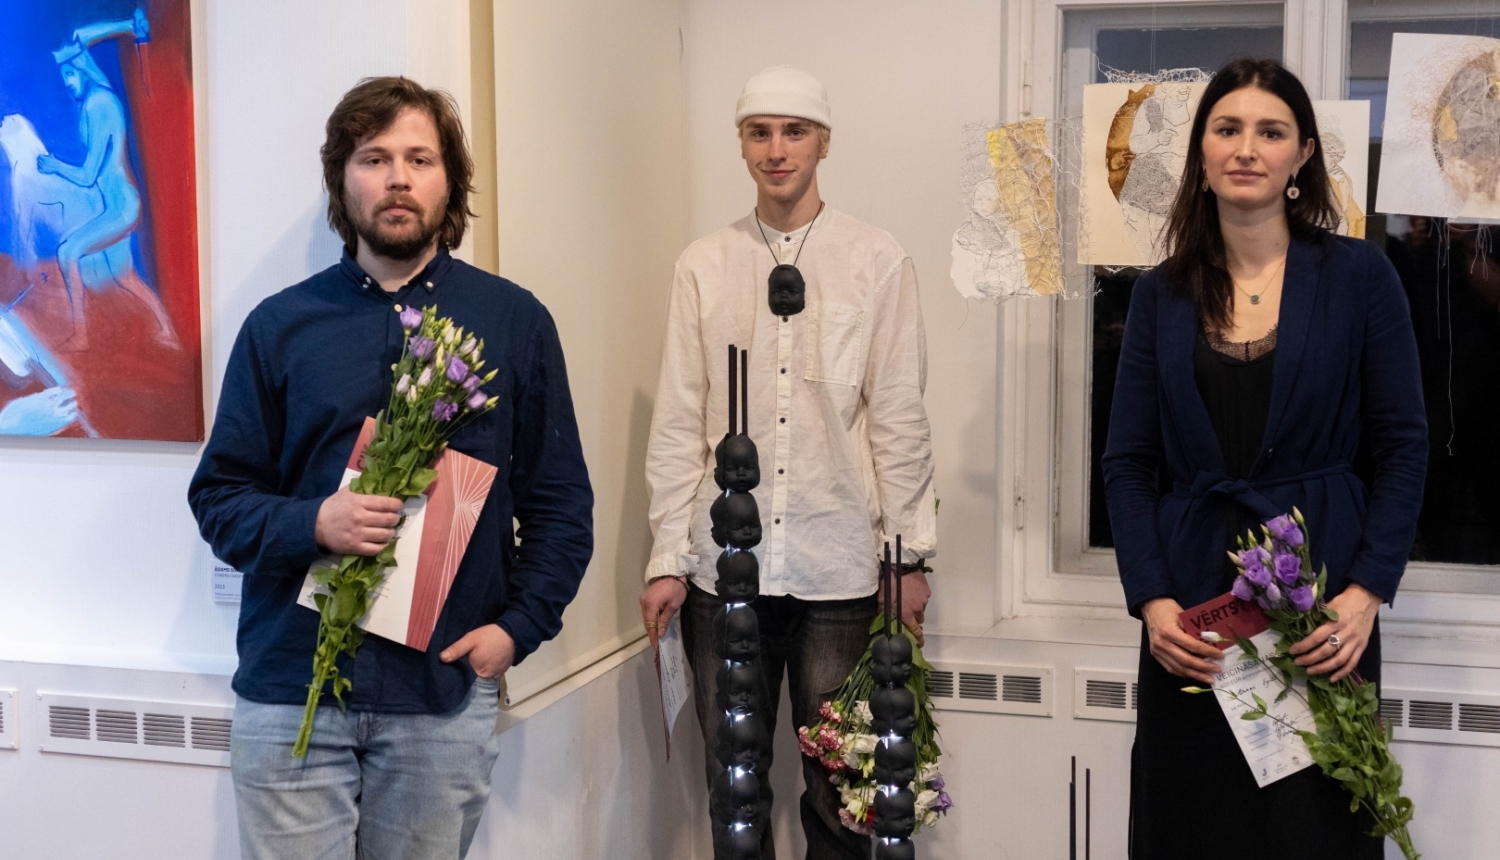 Konkursizstādes laureāti, no kreisās - Dāvis Ozols (galvenā balva), Ādams Sūna (veicināšanas balva un Jūrmalas muzeja balva), Anna Egle (veicināšanas balva)